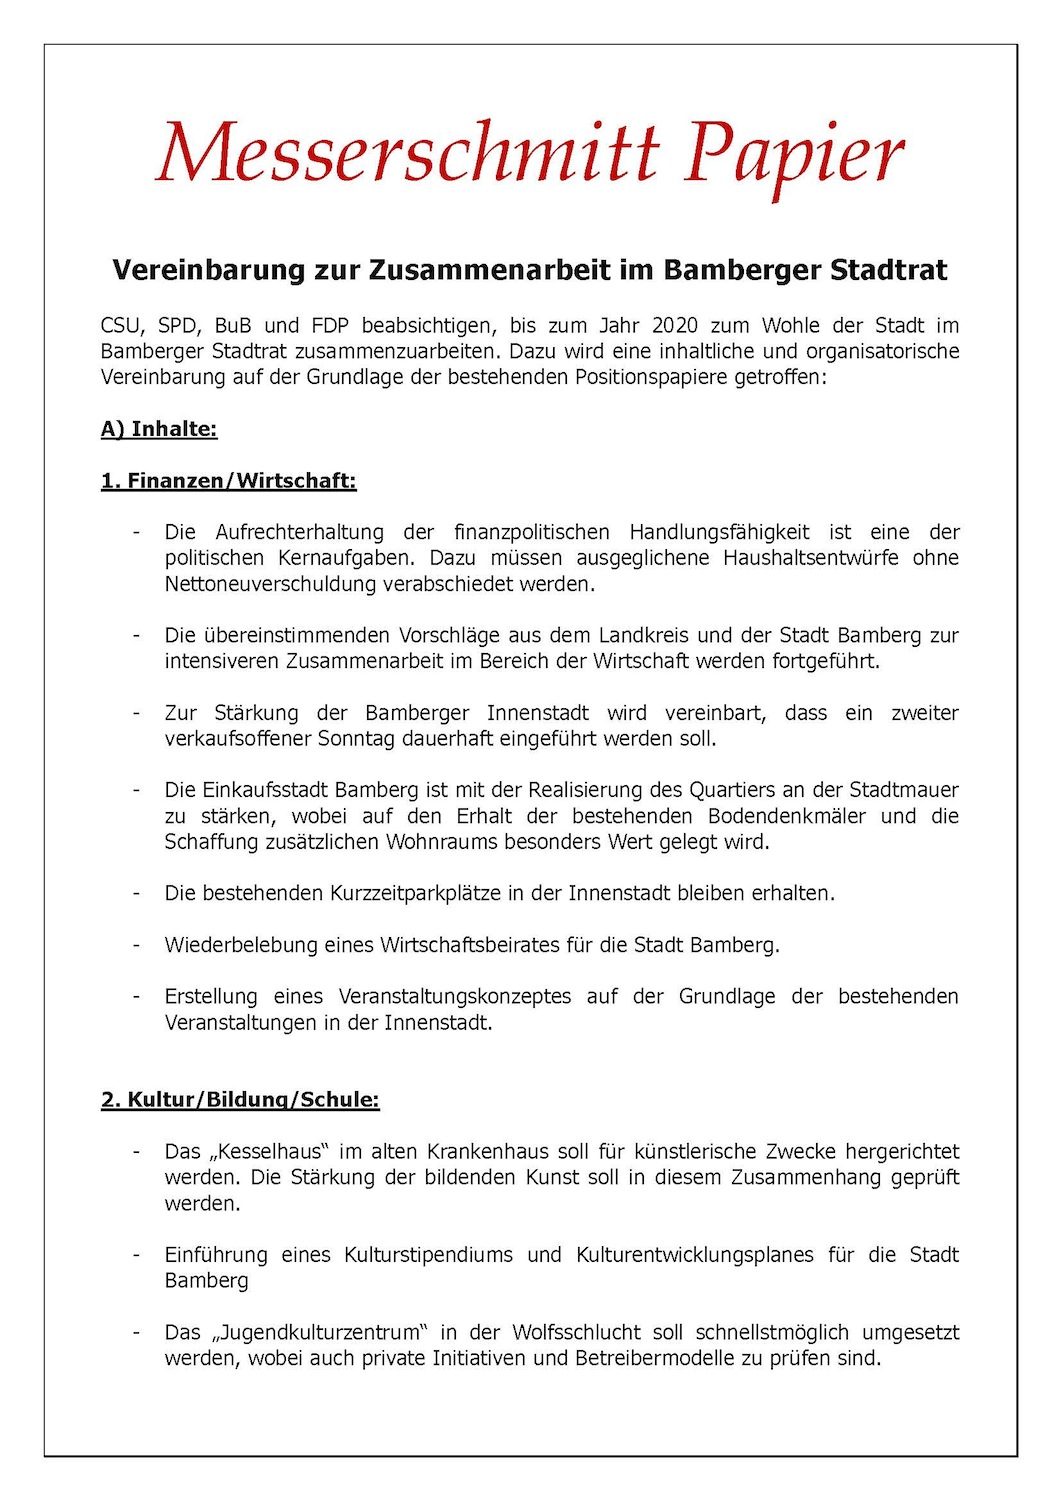 Messerschmitt Papier Koalition CSU SPD BuB FDP 1 7 2014Teil2